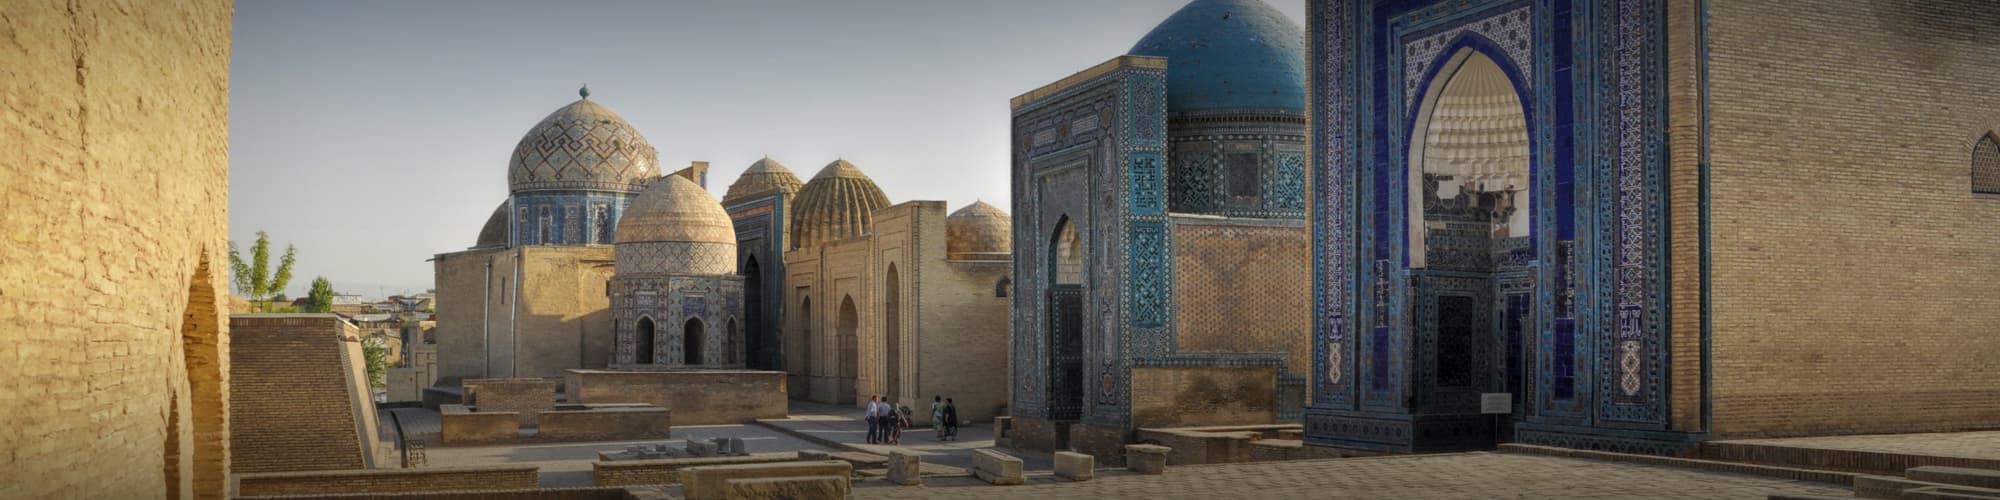 Voyage en Ouzbékistan : trek et randonnée © MisoKnitl/iStock